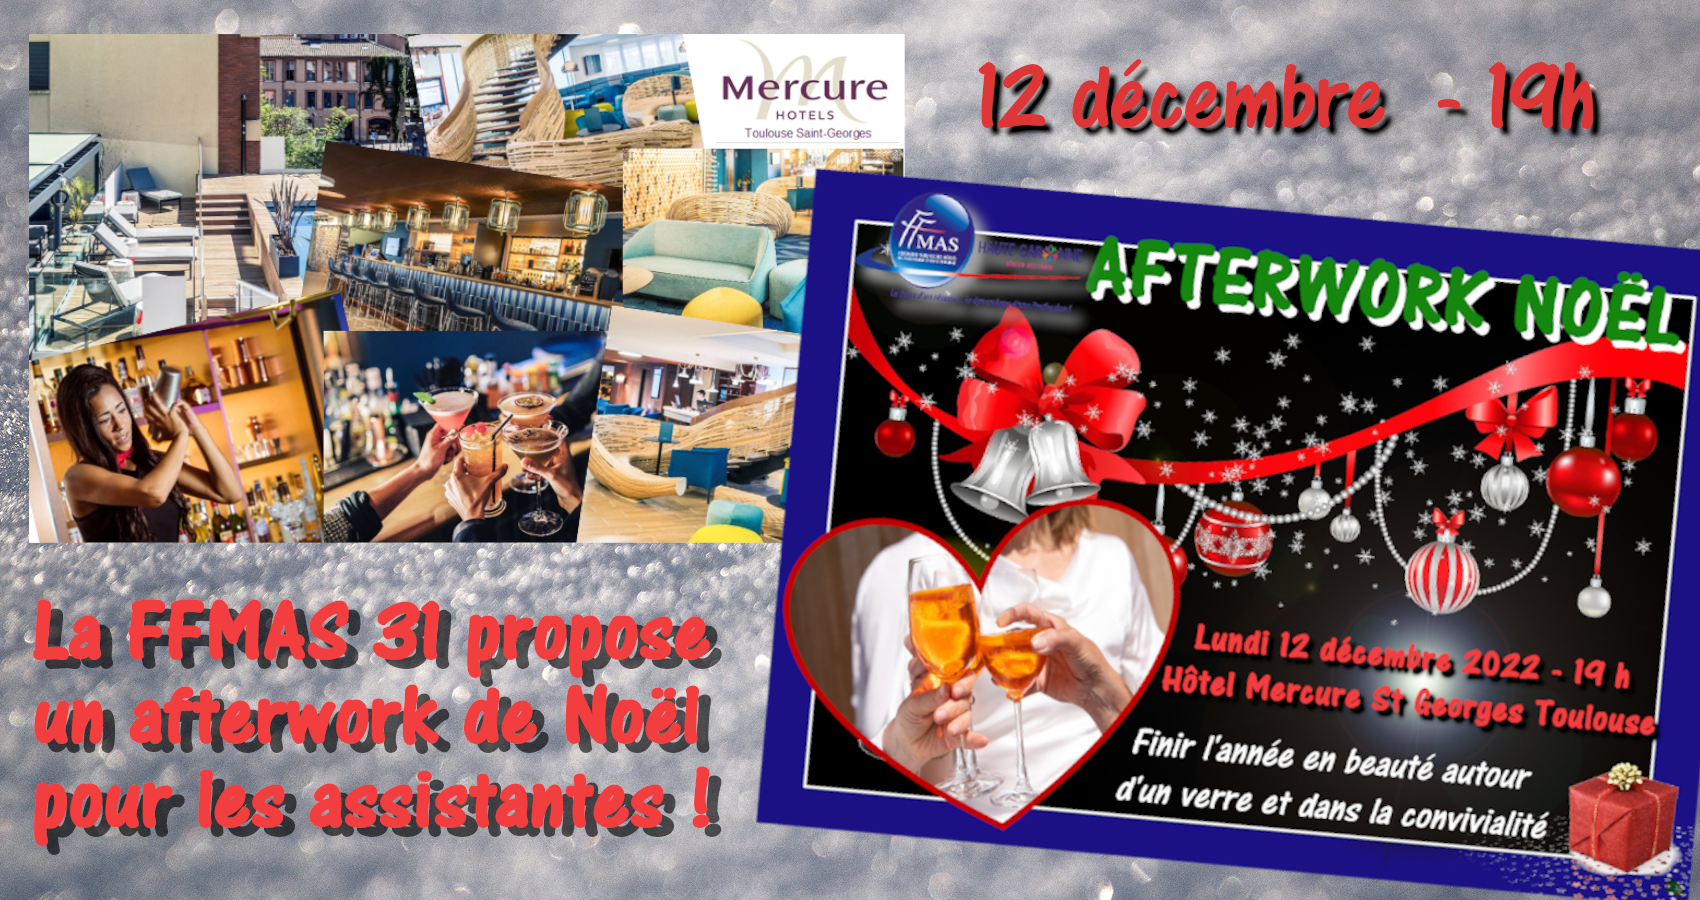 You are currently viewing Afterwork et cocktail de Noël pour les assistant(e)s de Toulouse – 12 décembre 2022 – 19 h